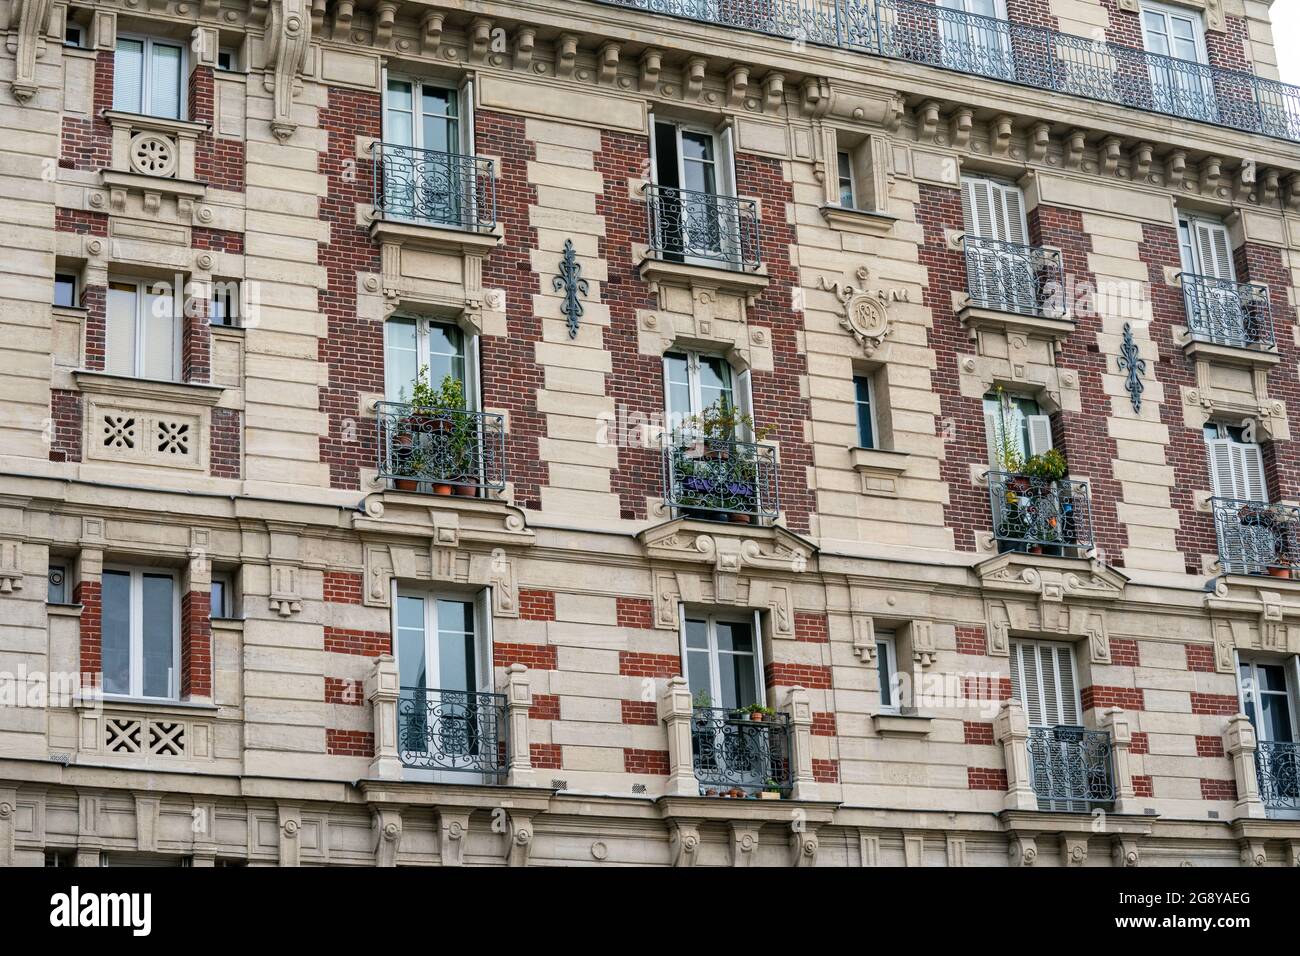 Strade ed edifici a Parigi Foto Stock